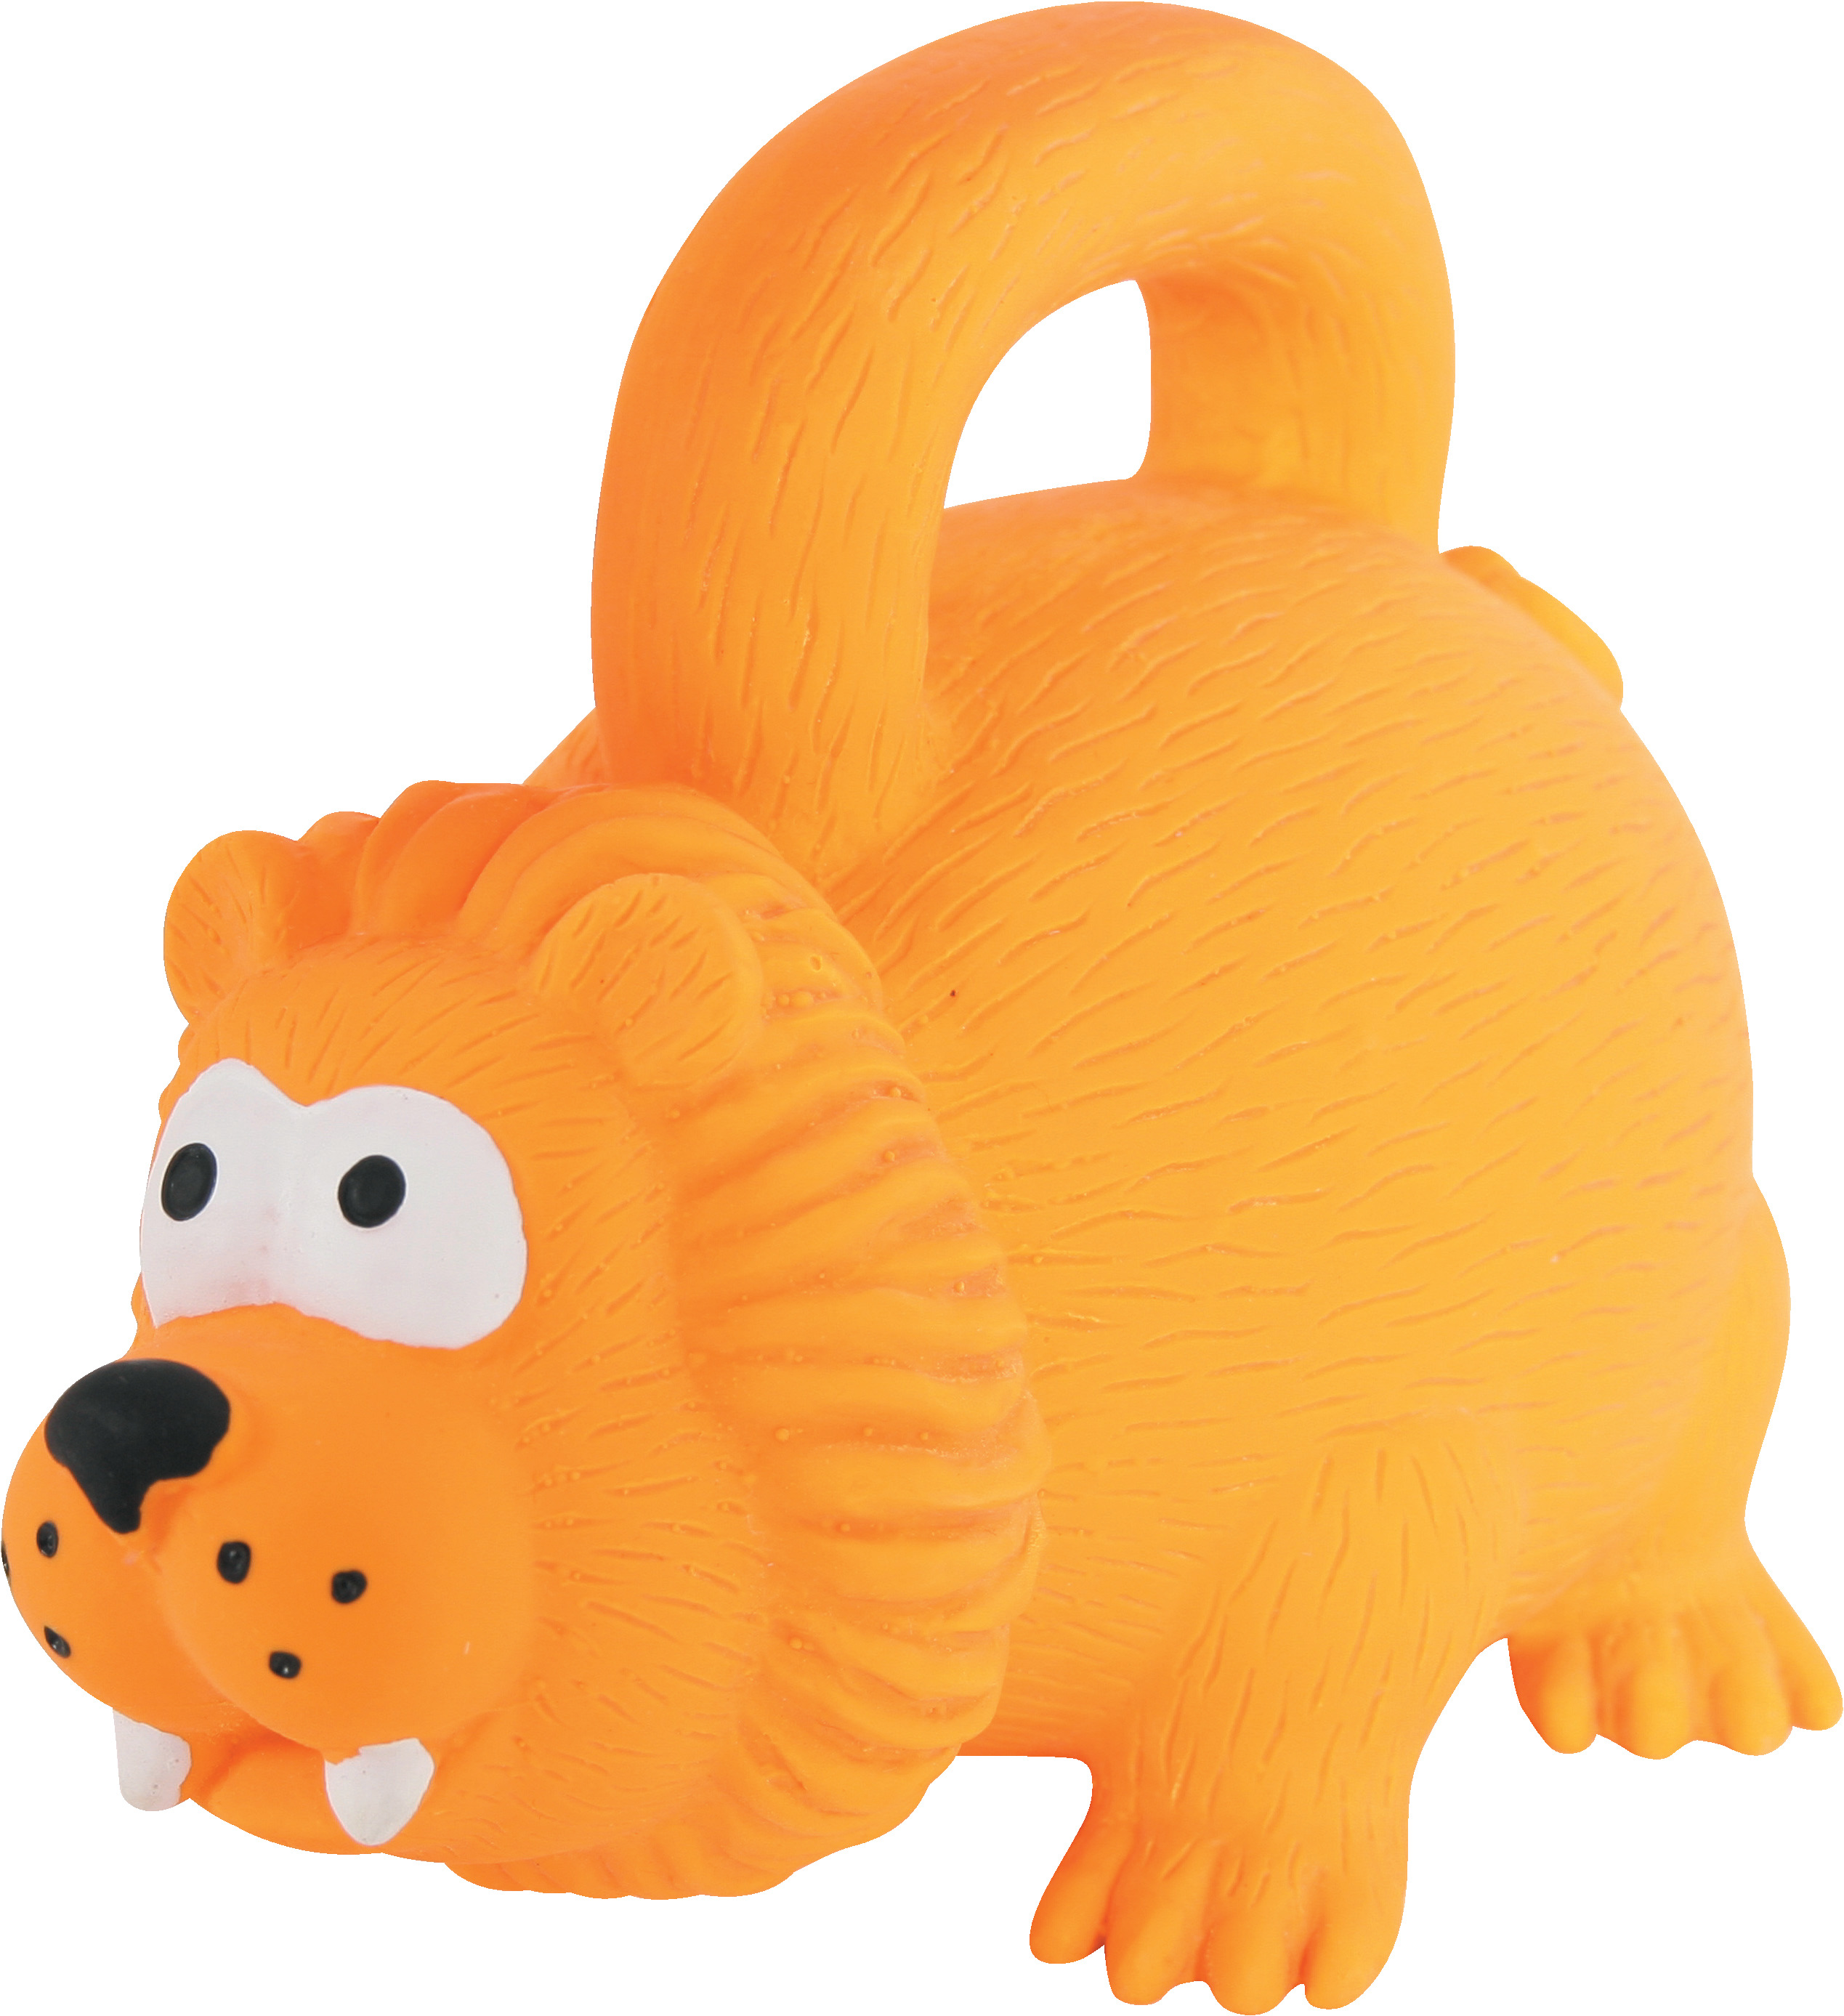 Zolux jouets pour chiot, animaux en latex. : Animaux Market